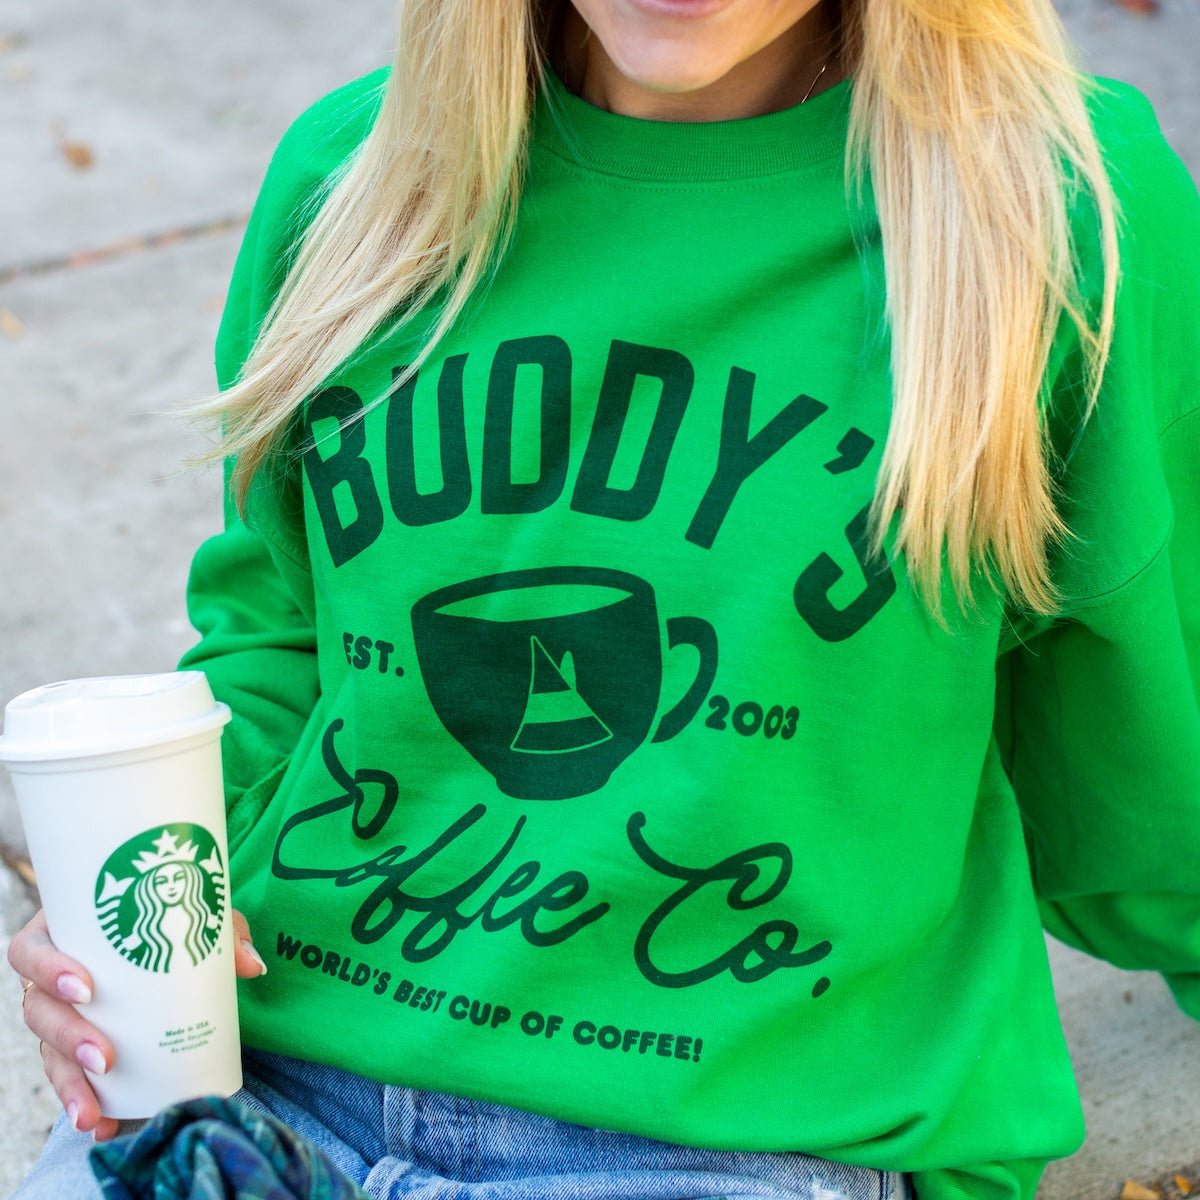 'Buddy's Coffee Co.' Crewneck Sweatshirt - United Monograms